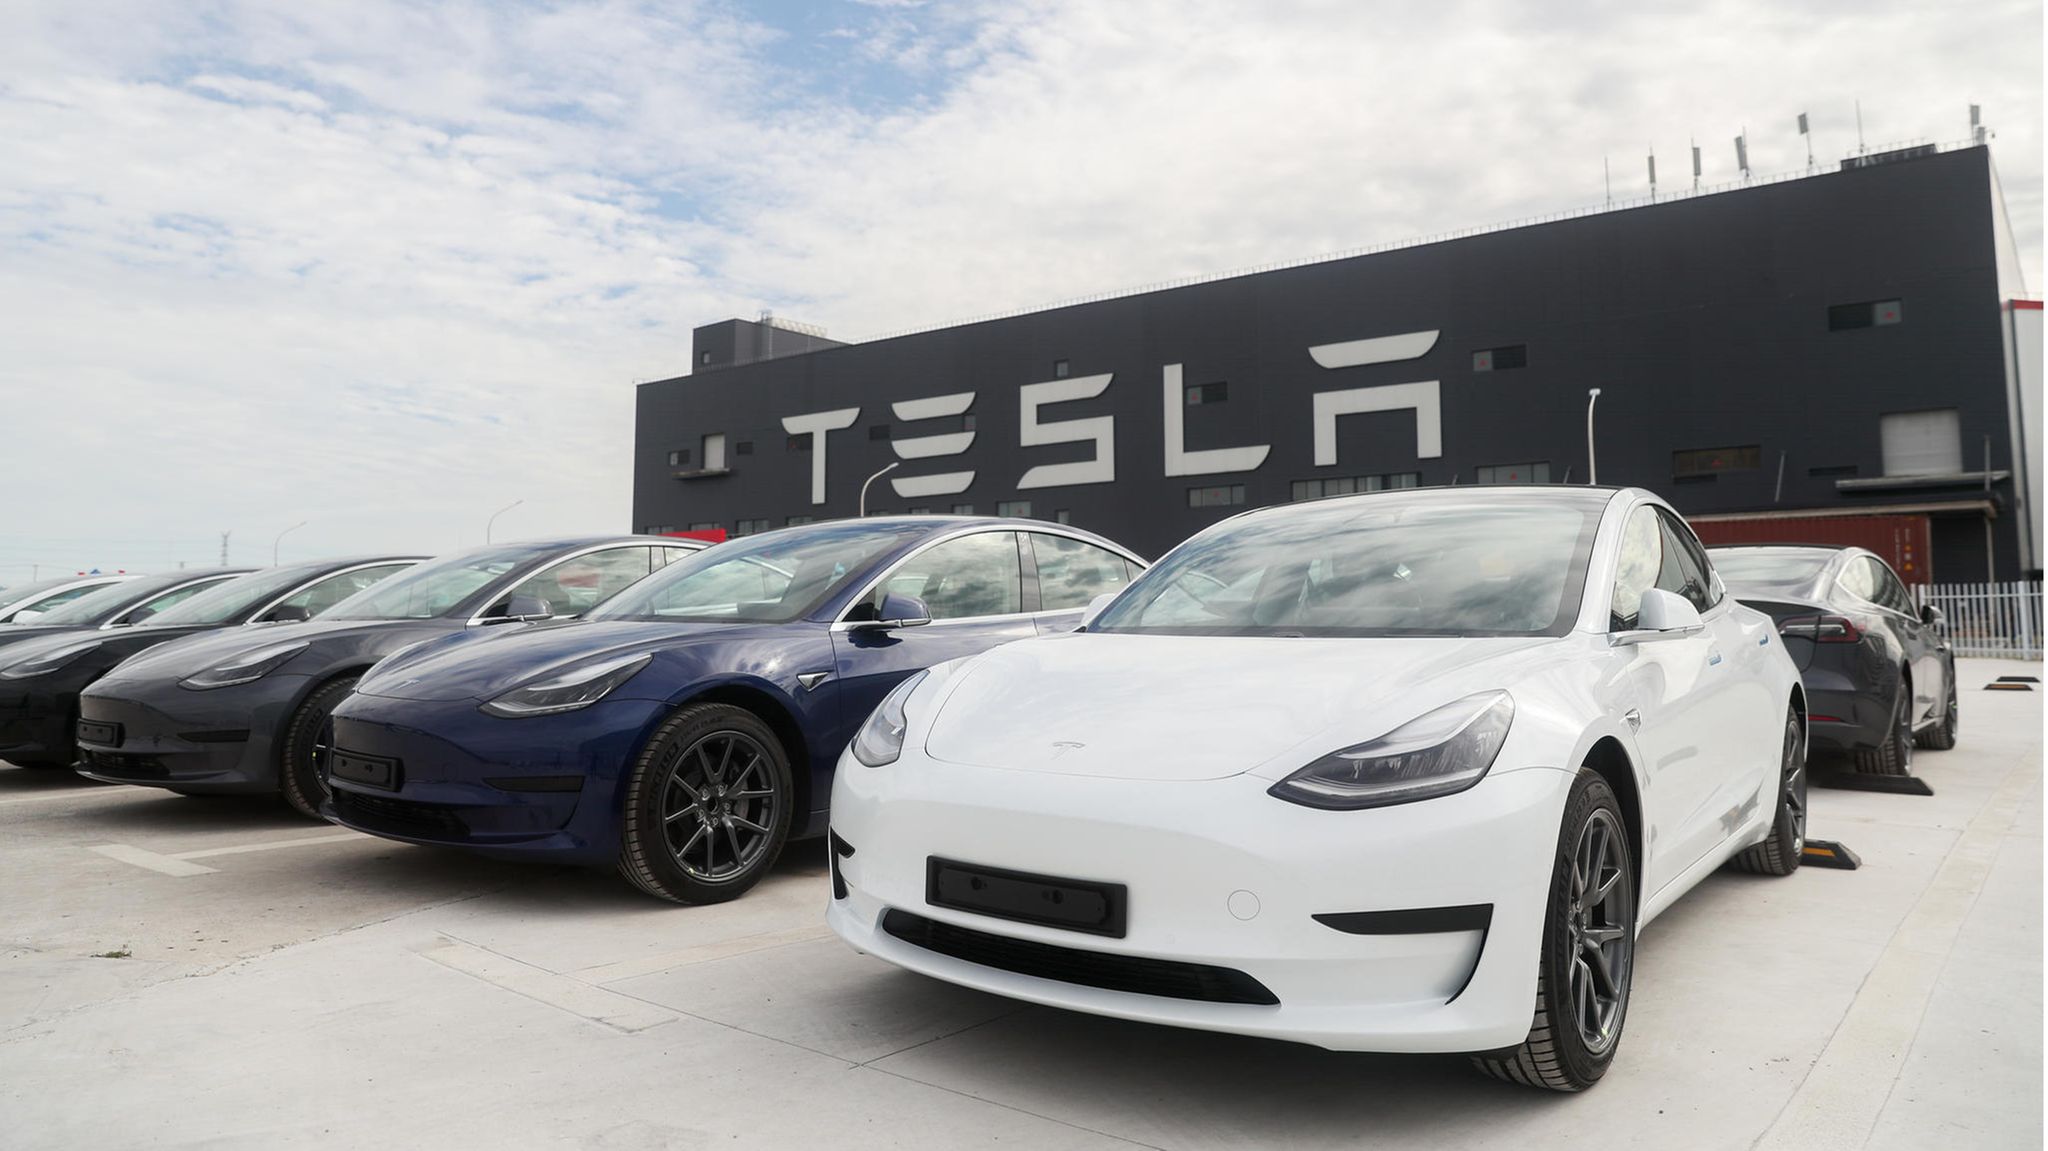 Tesla-Rückruf: Zehntausende Autos mit Sicherheitsbedenken